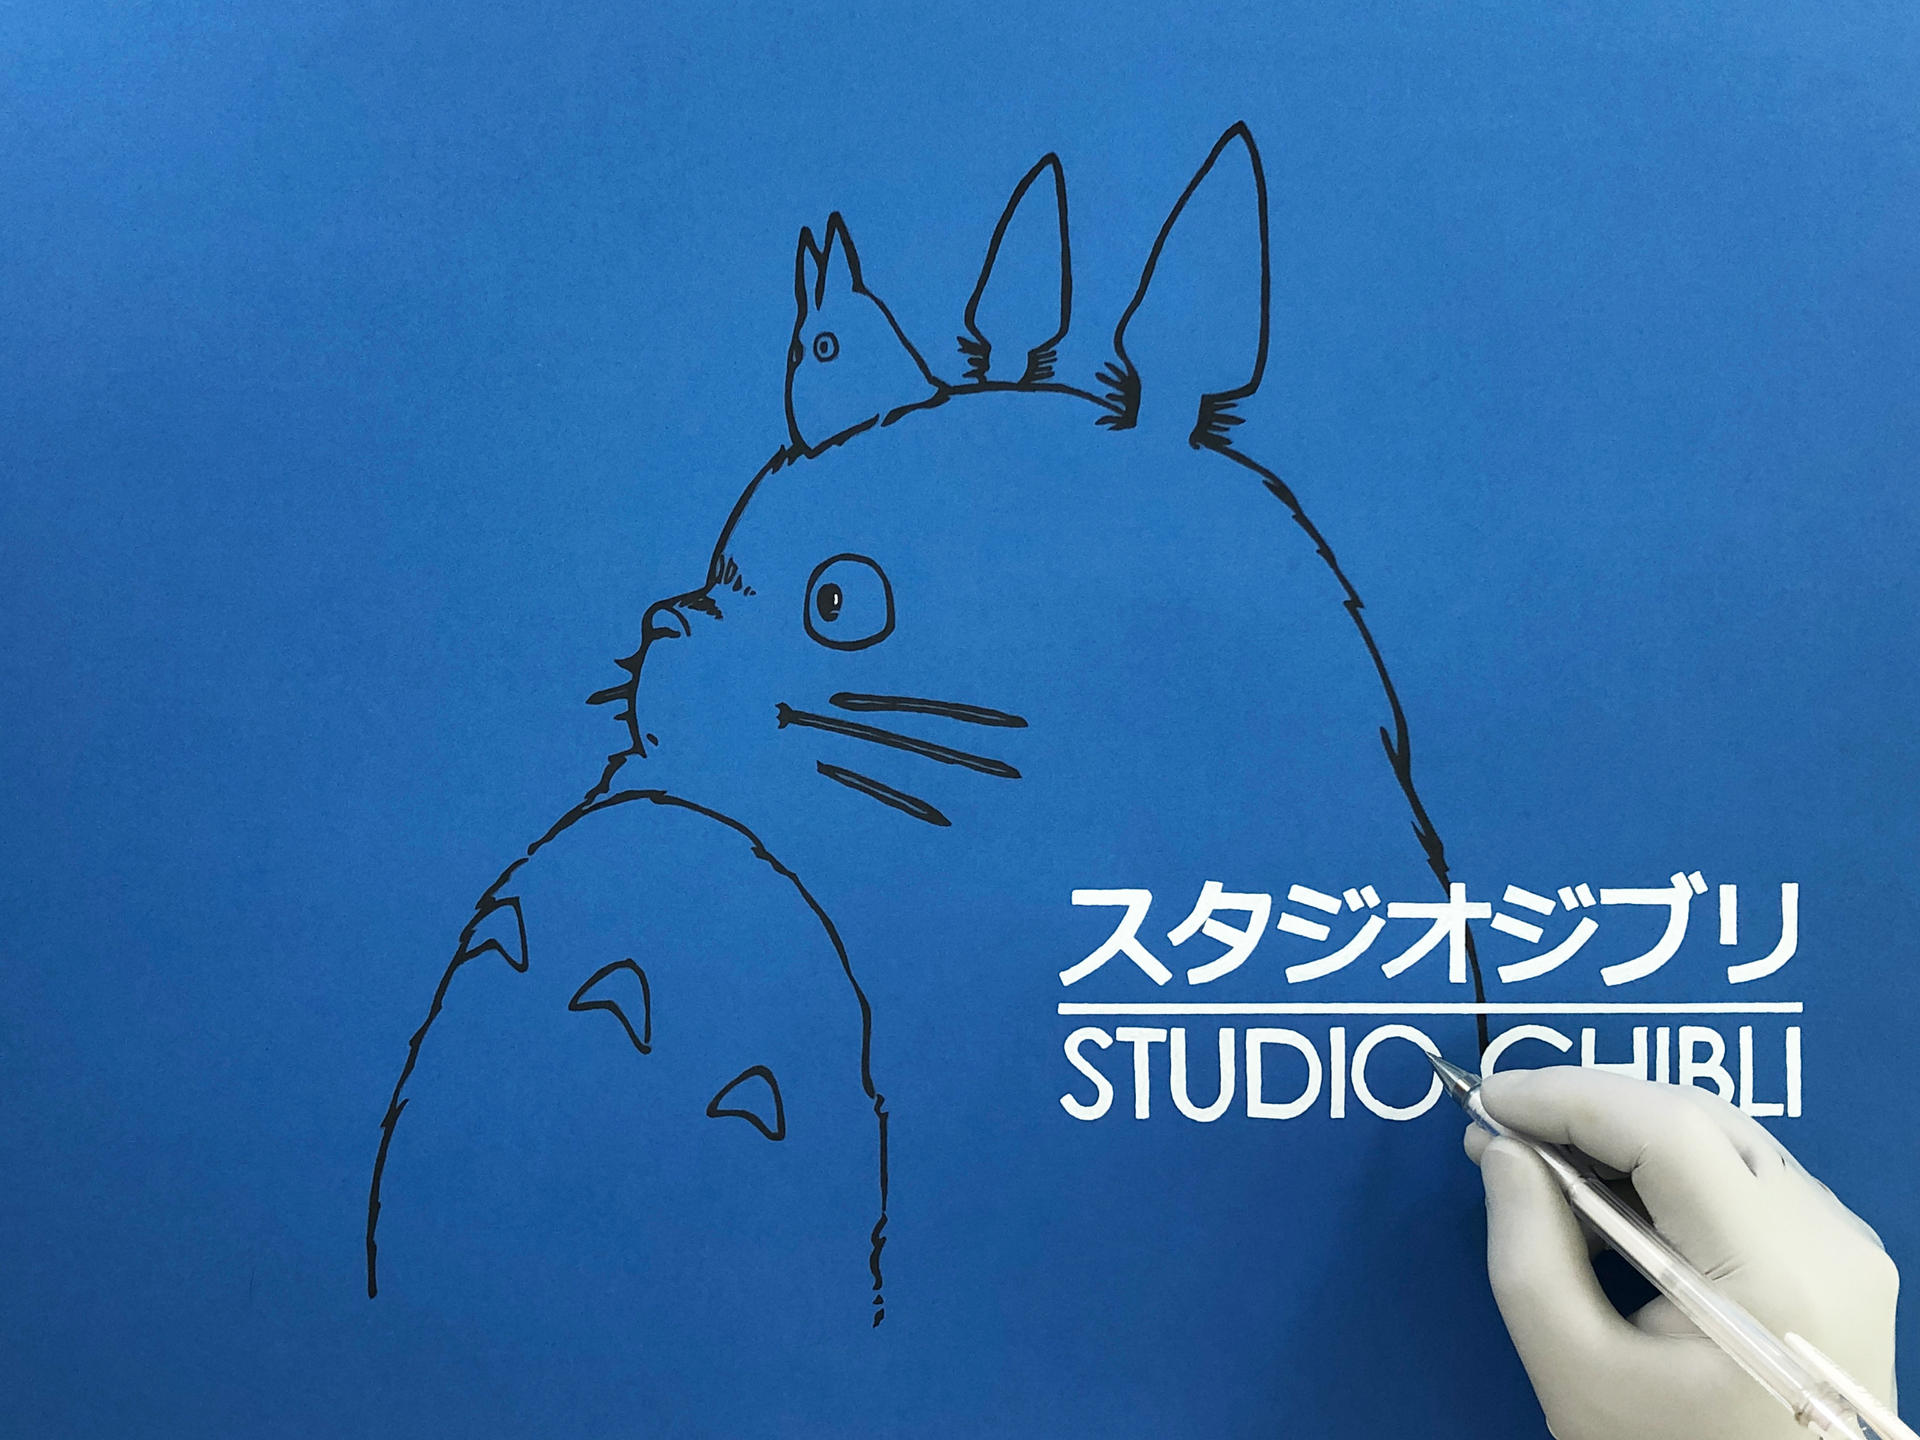 How to draw Studio Ghibli Logo | ARTOY by hazimala on DeviantArt